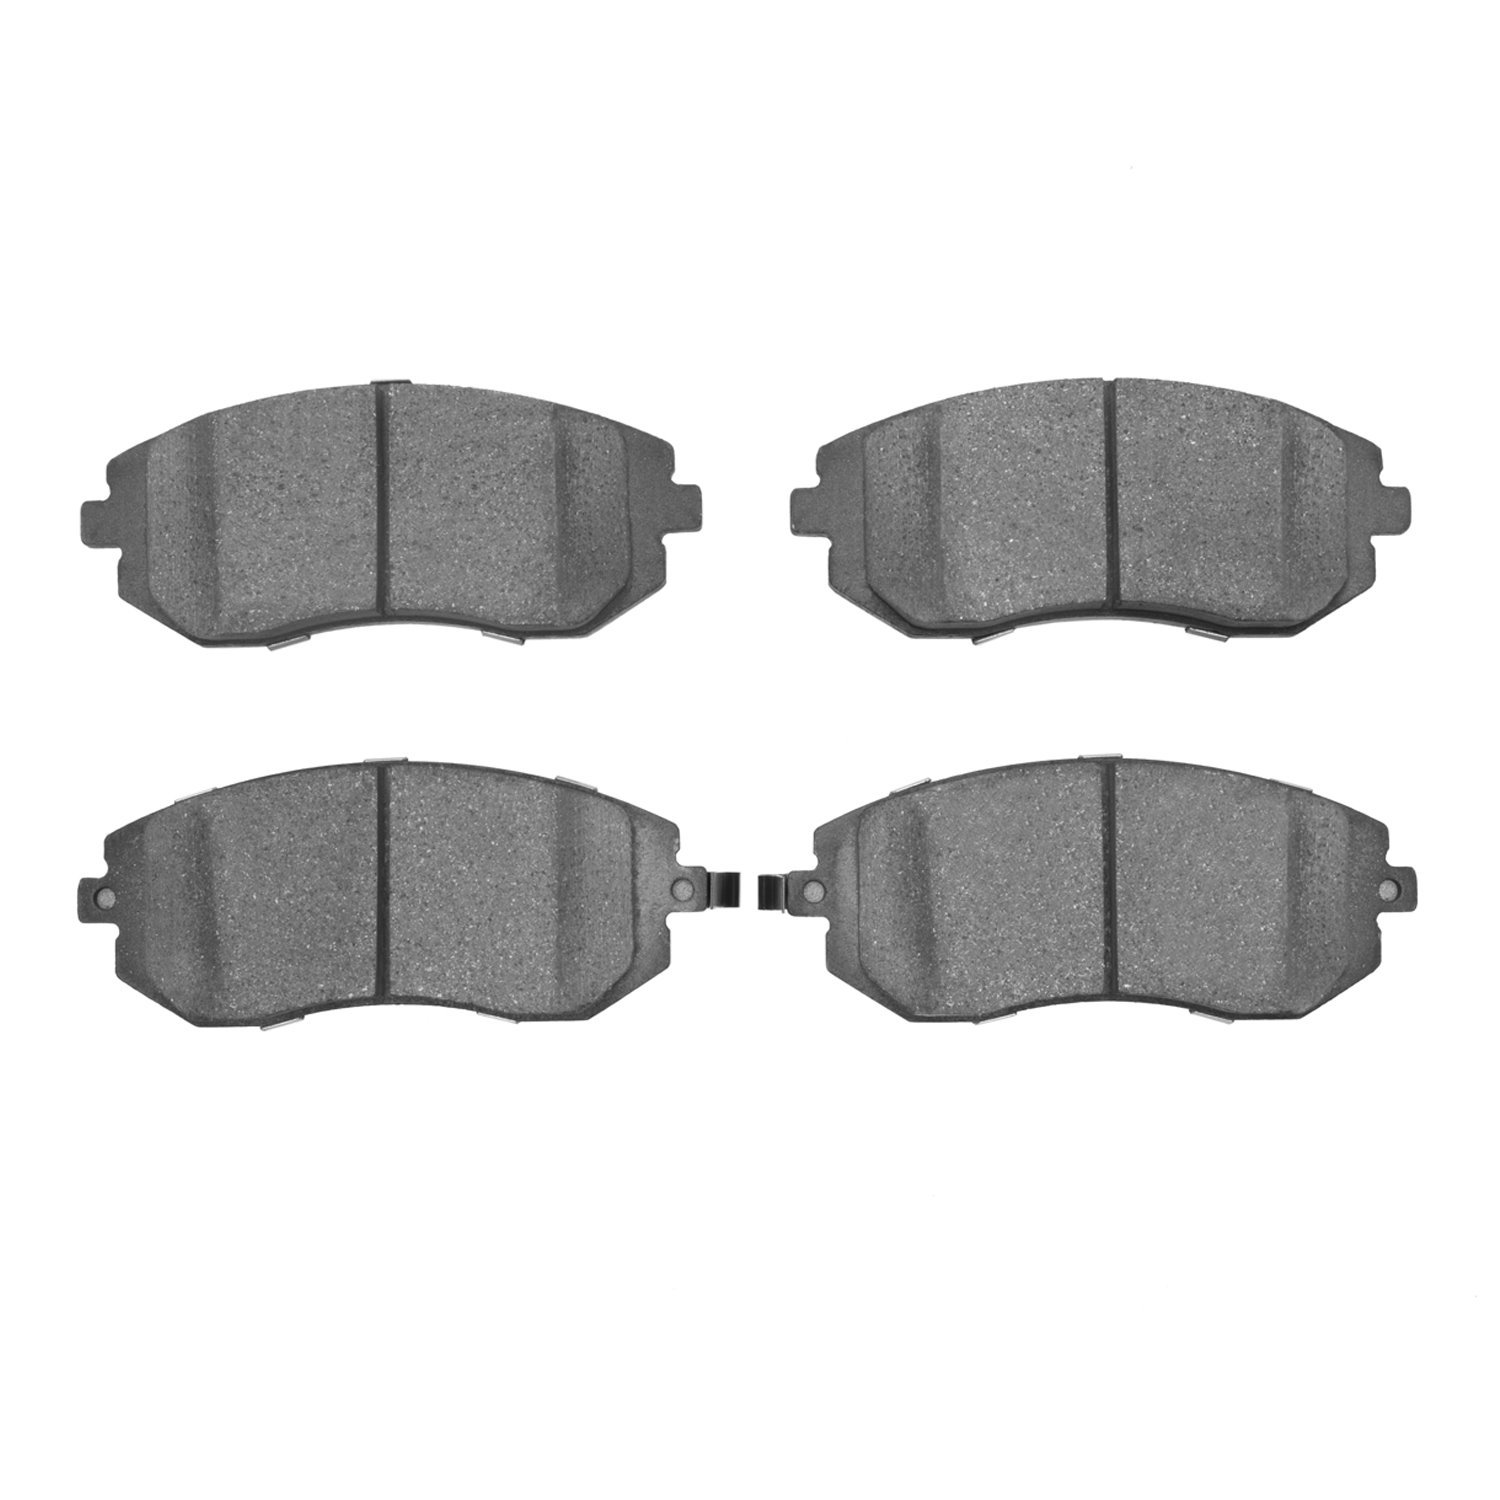 Ceramic Brake Pads, 2002-2012 Fits Multiple Makes/Models, Position: Front